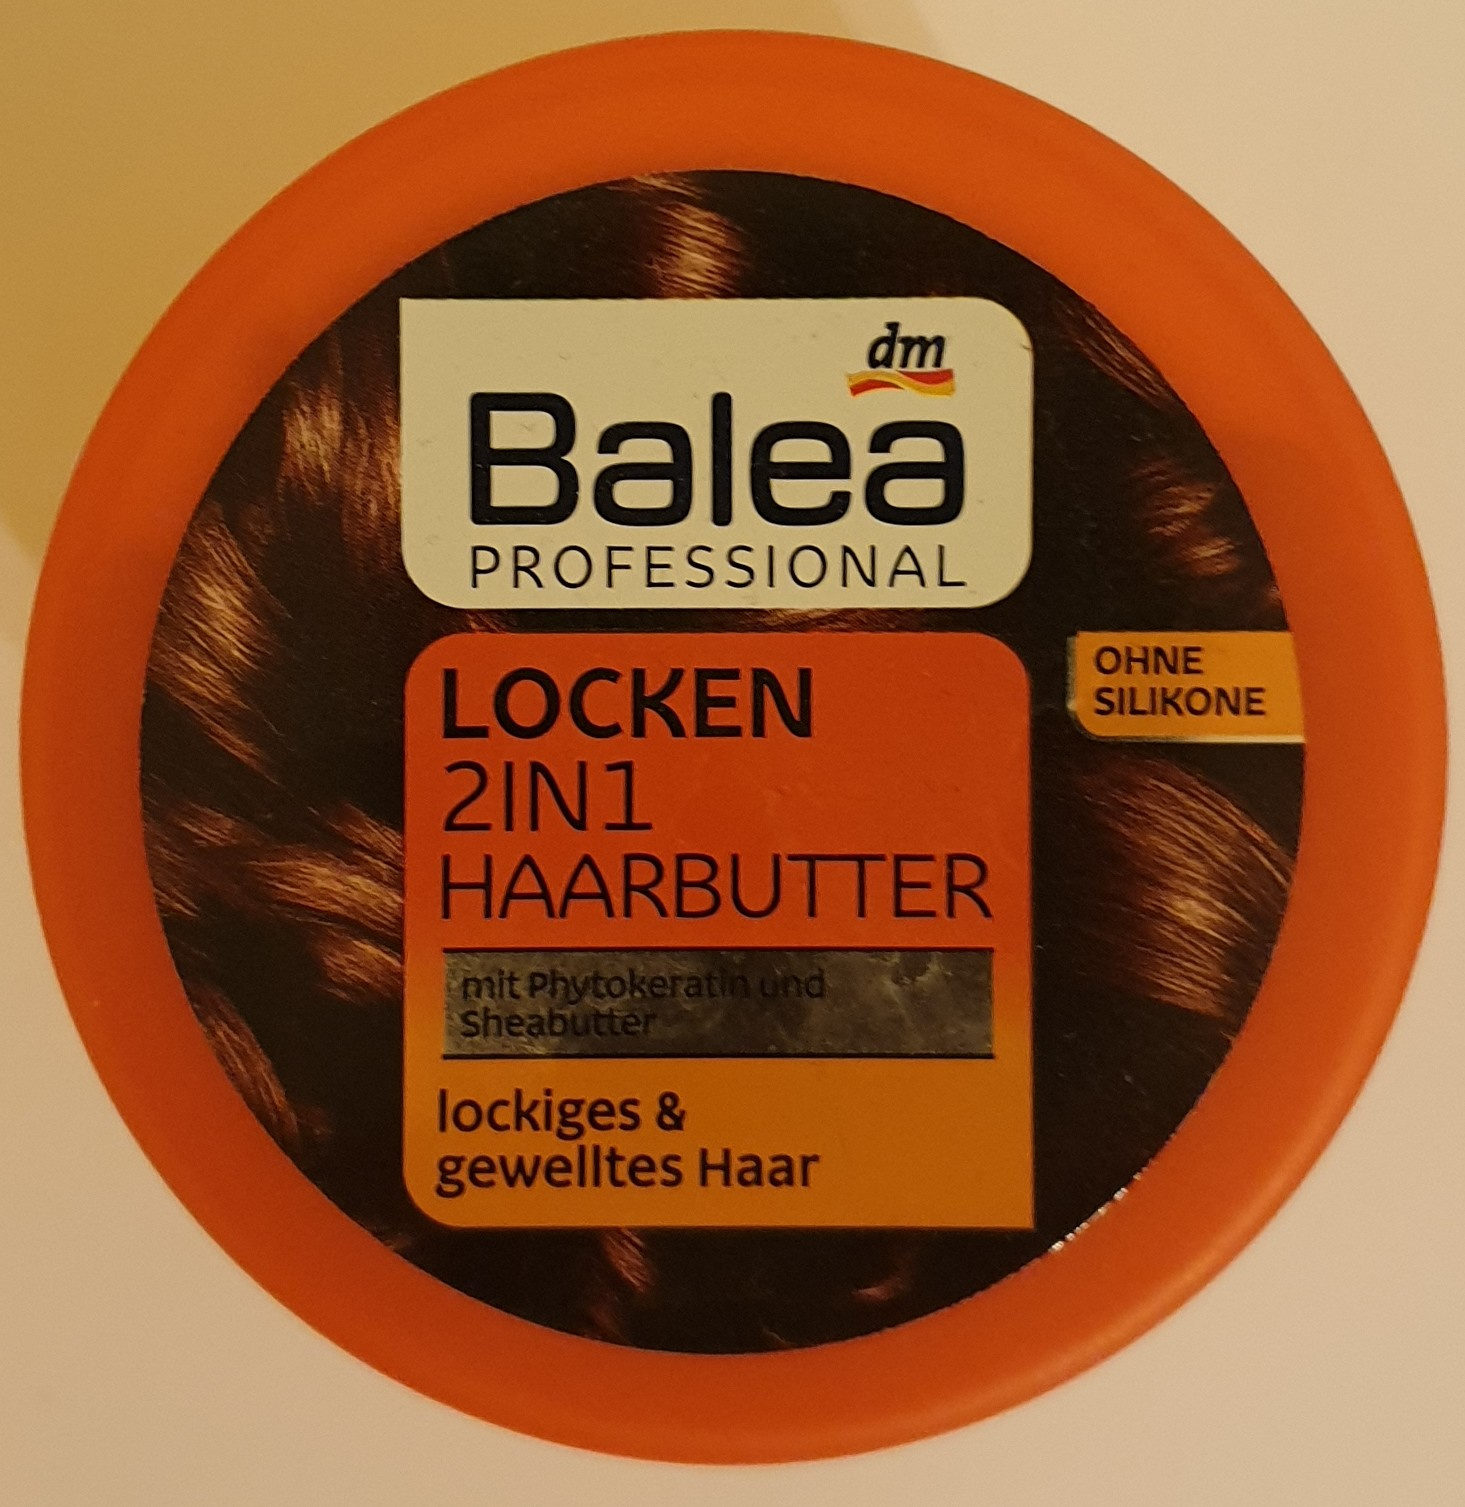 Locken 2in1 Haarbutter - Product - de